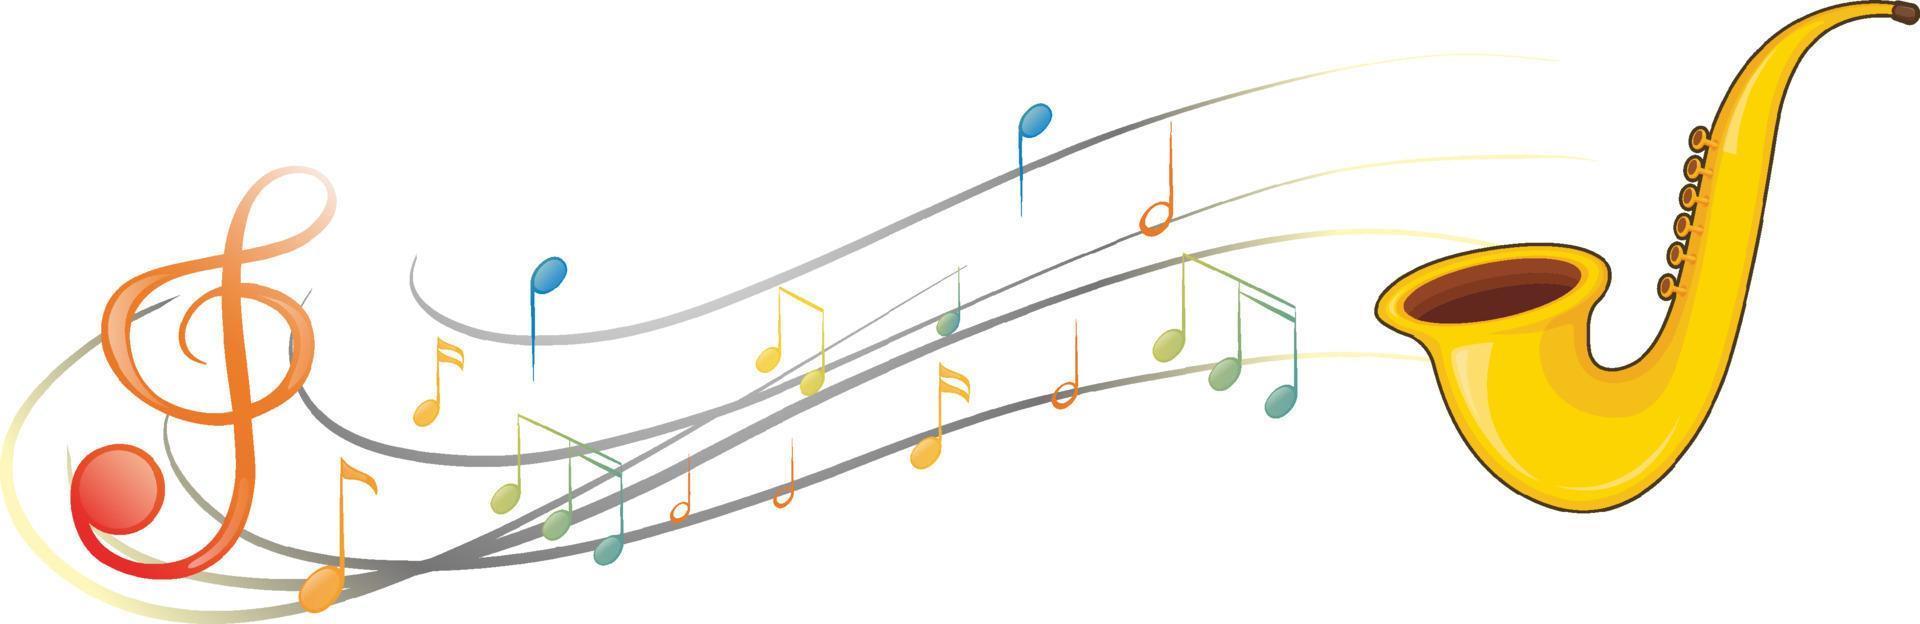 ein Saxophon mit Noten auf weißem Hintergrund vektor